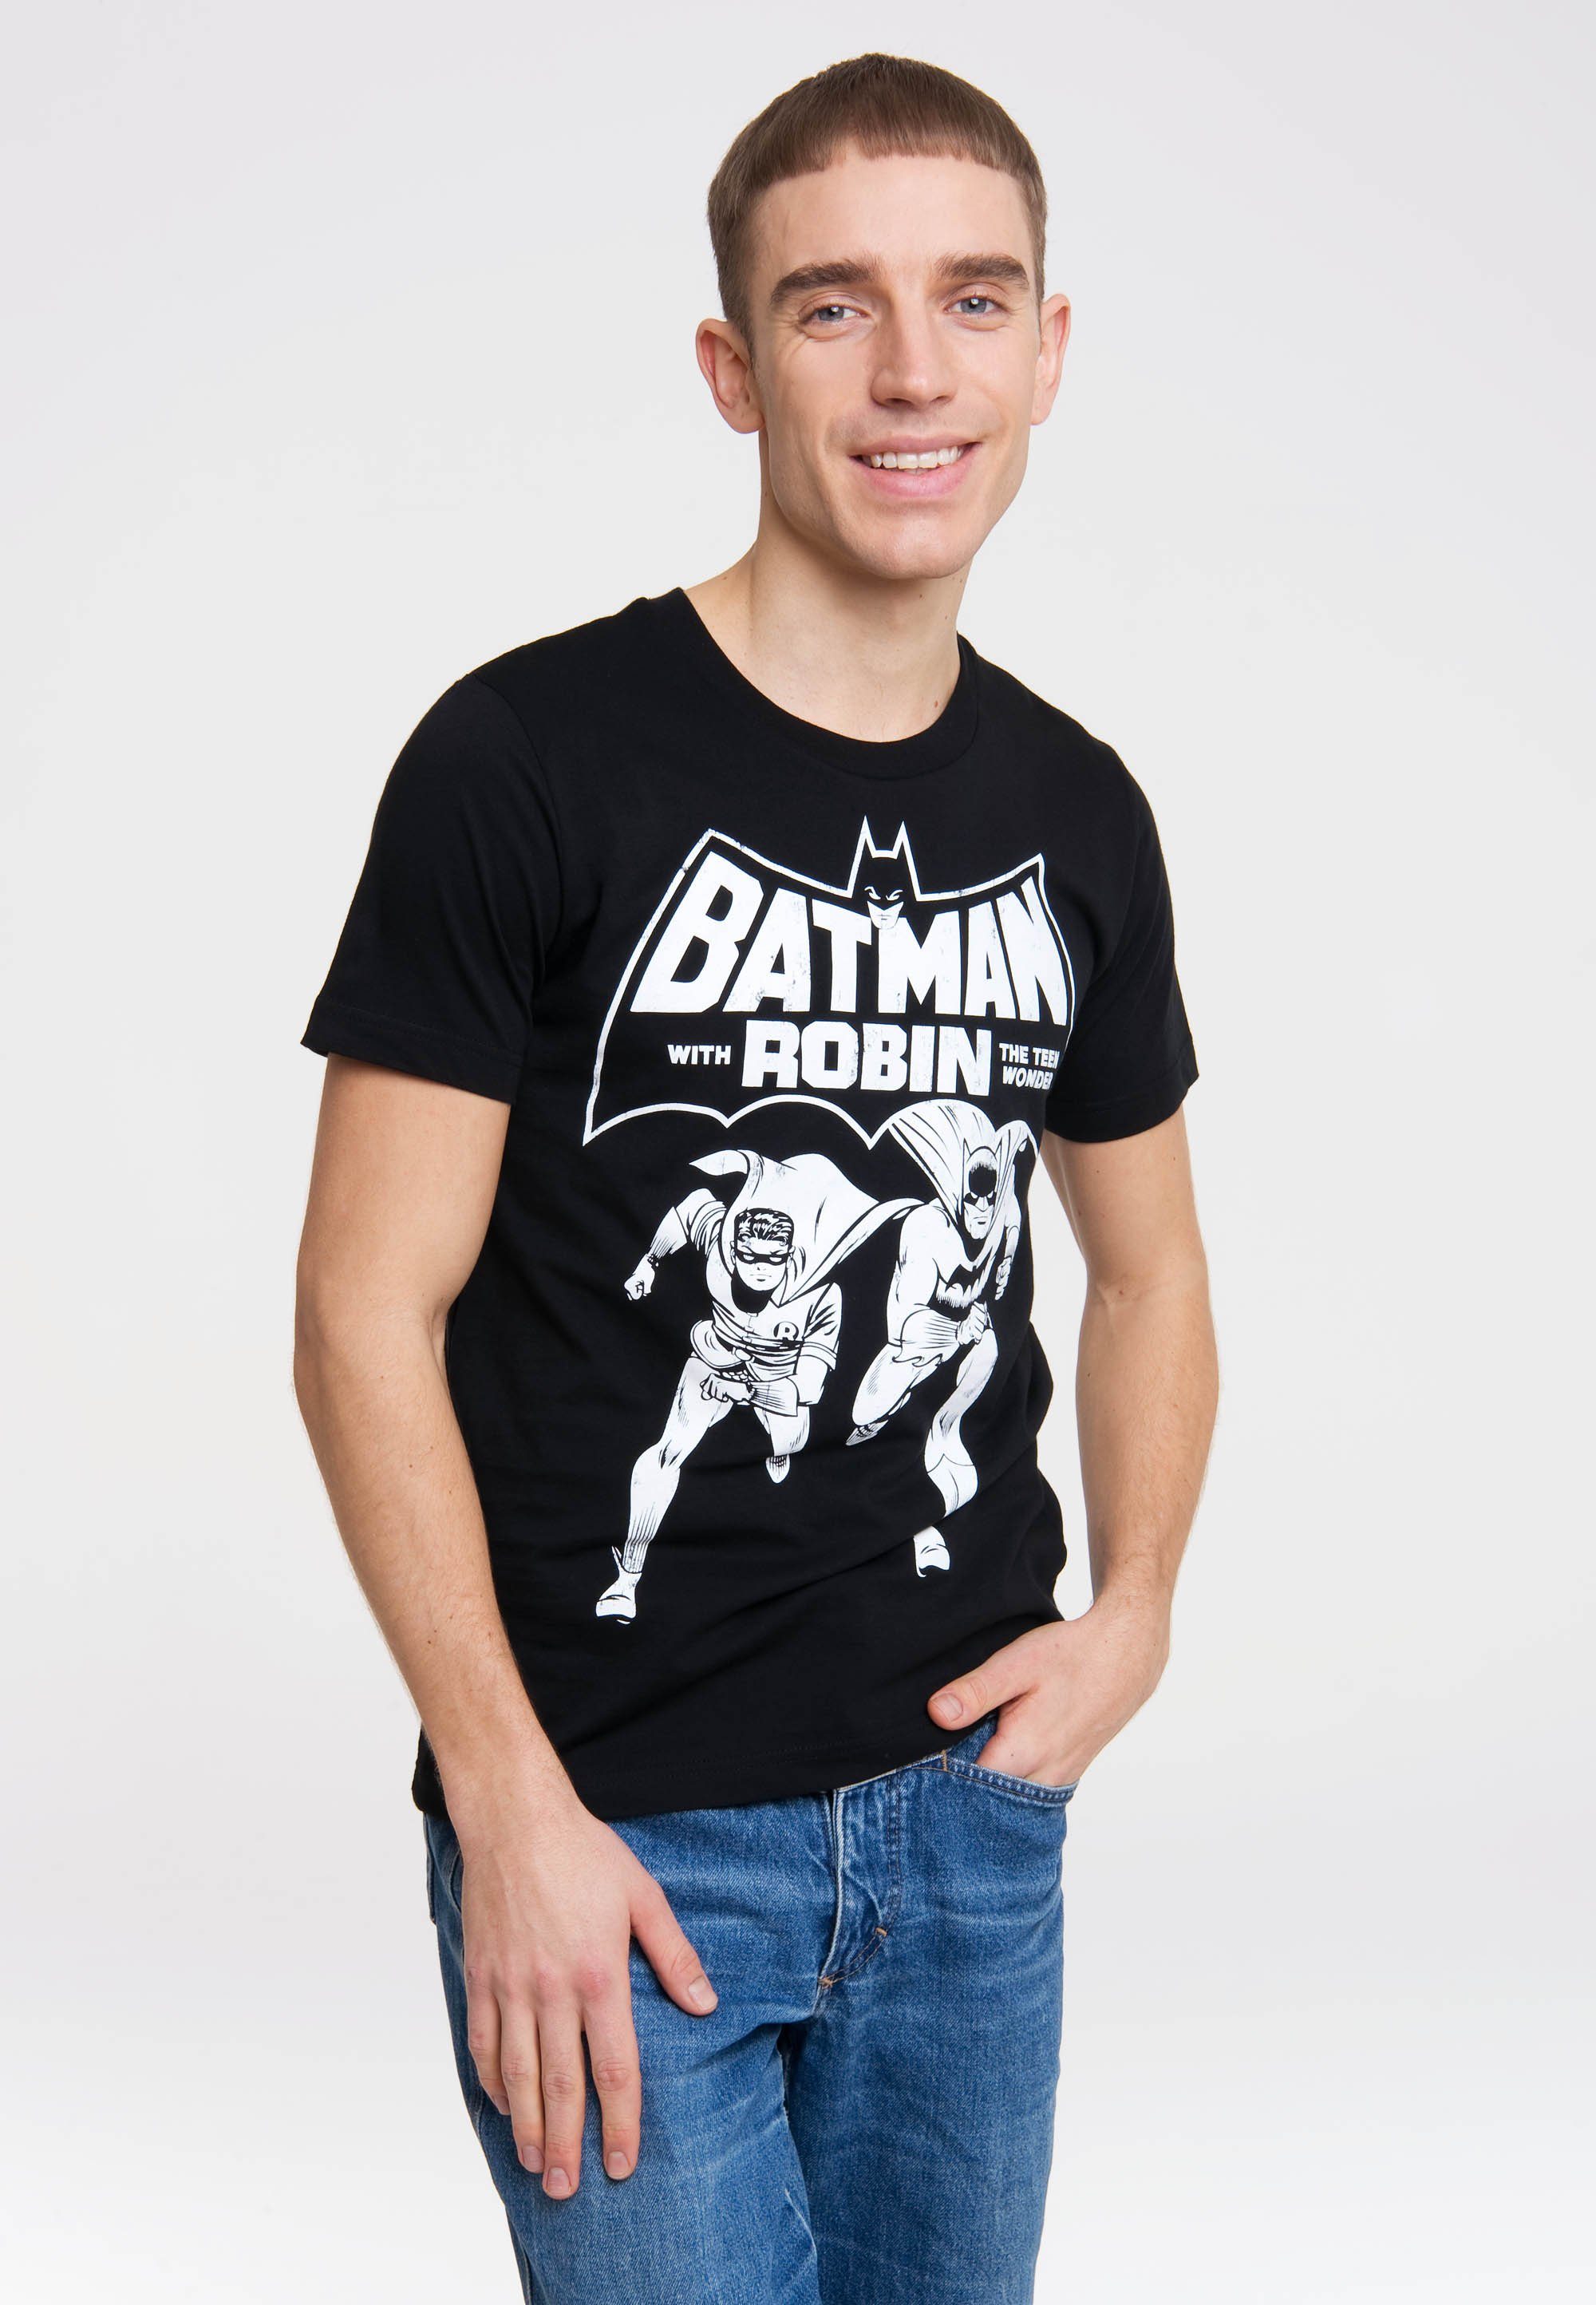 LOGOSHIRT T-Shirt BATMAN AND ROBIN - THE TEEN WONDER mit coolem Superhelden- Print, Angesagtes Batman and Robin T-Shirt in Easy Fit-Schnitt